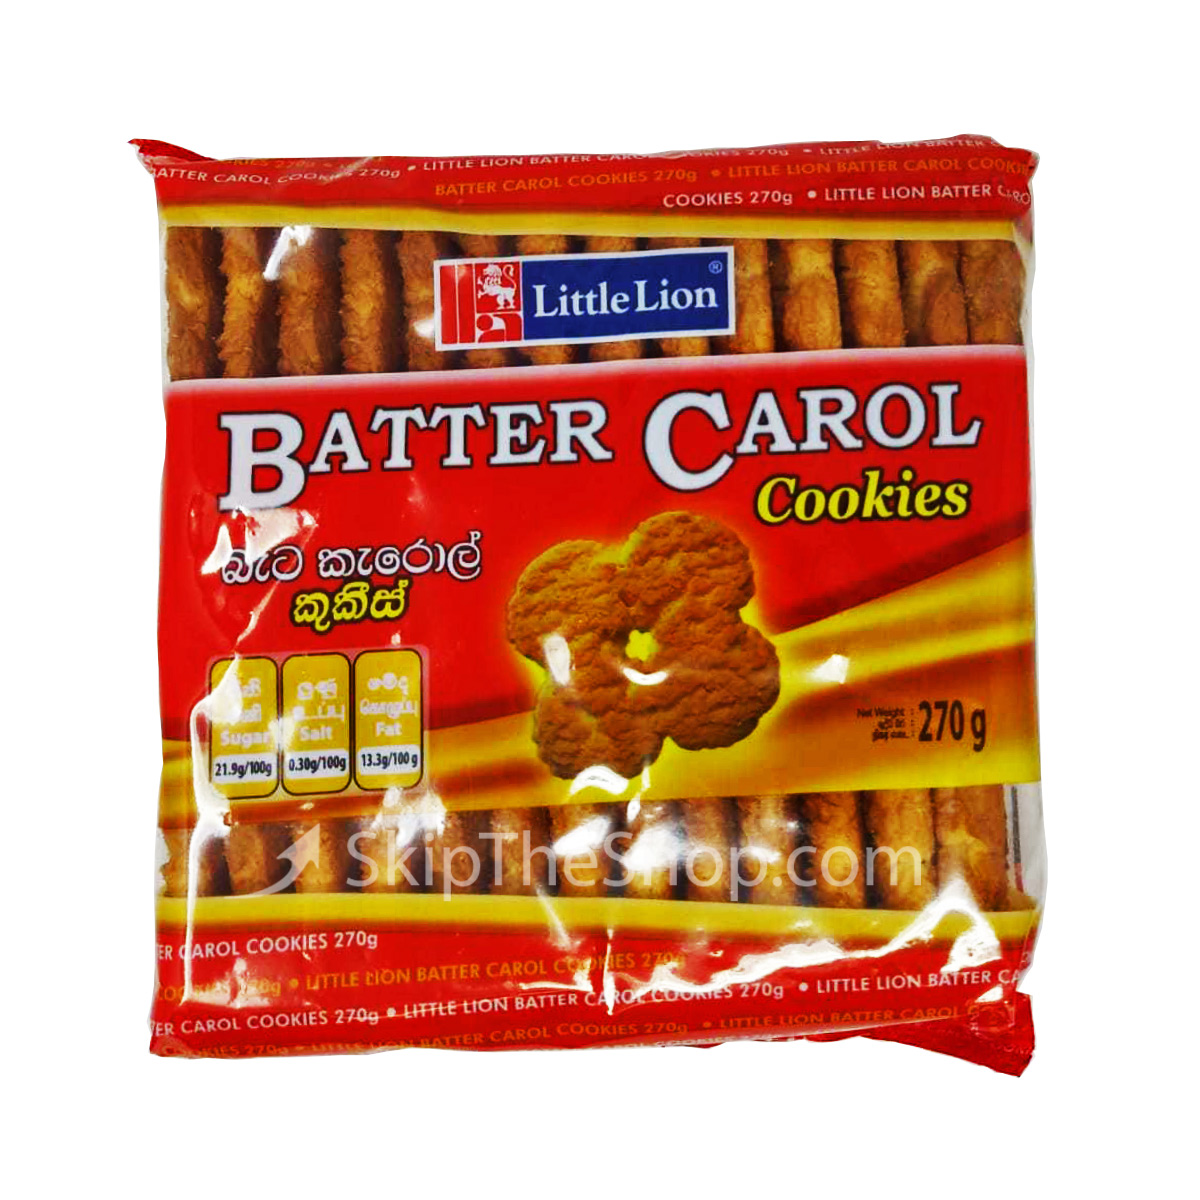 Little Lion Butter carol (Packet) 270g